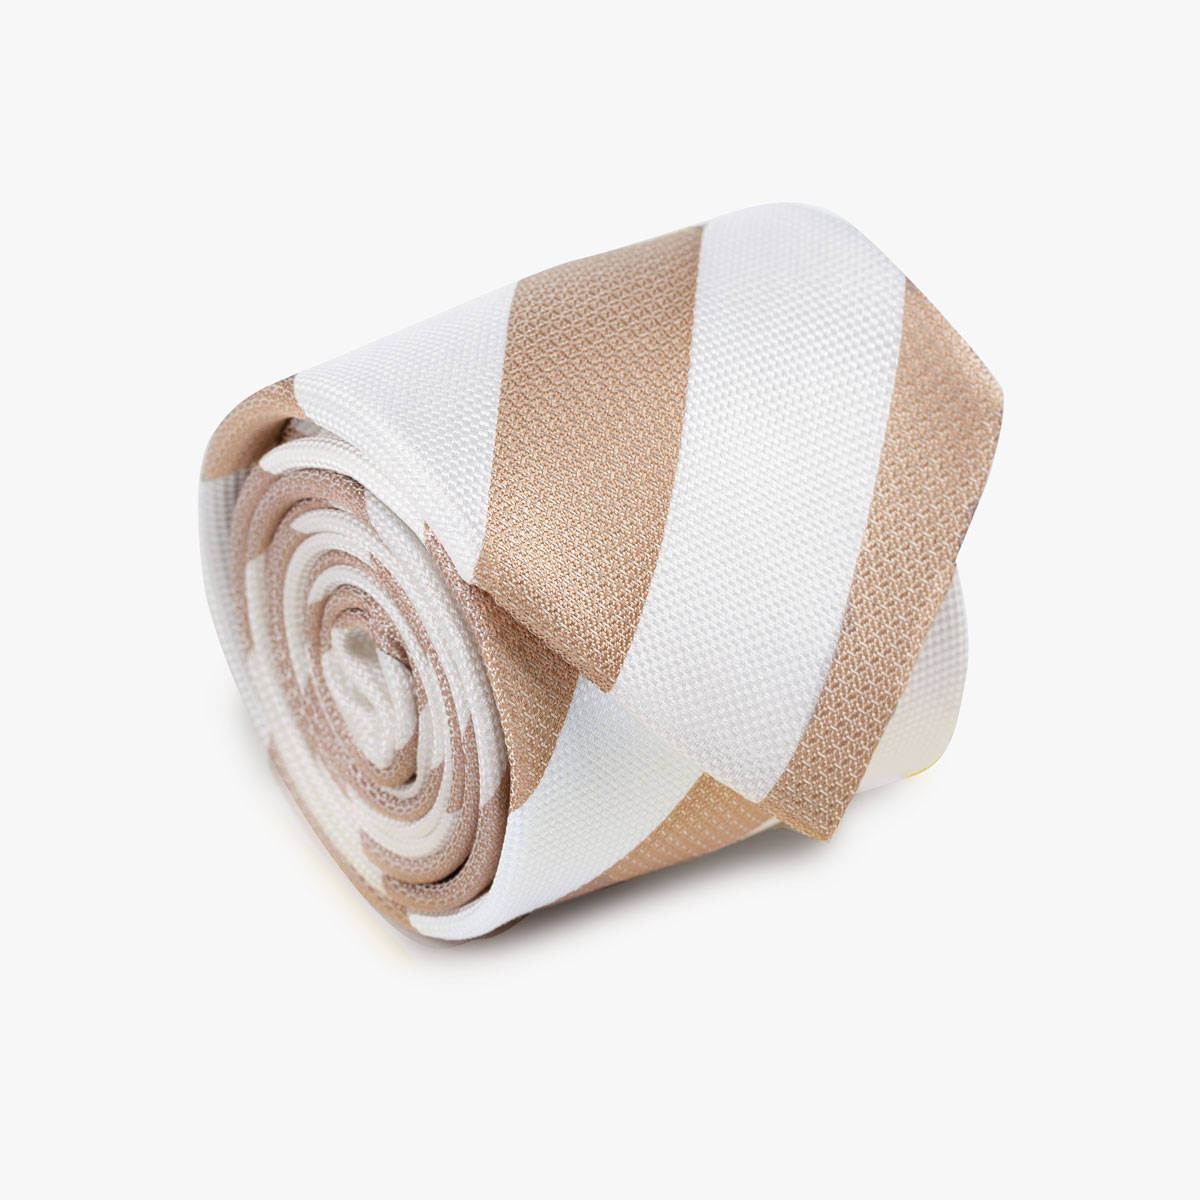 Aufgerollte Krawatte mit breiten Streifen in beige weiß